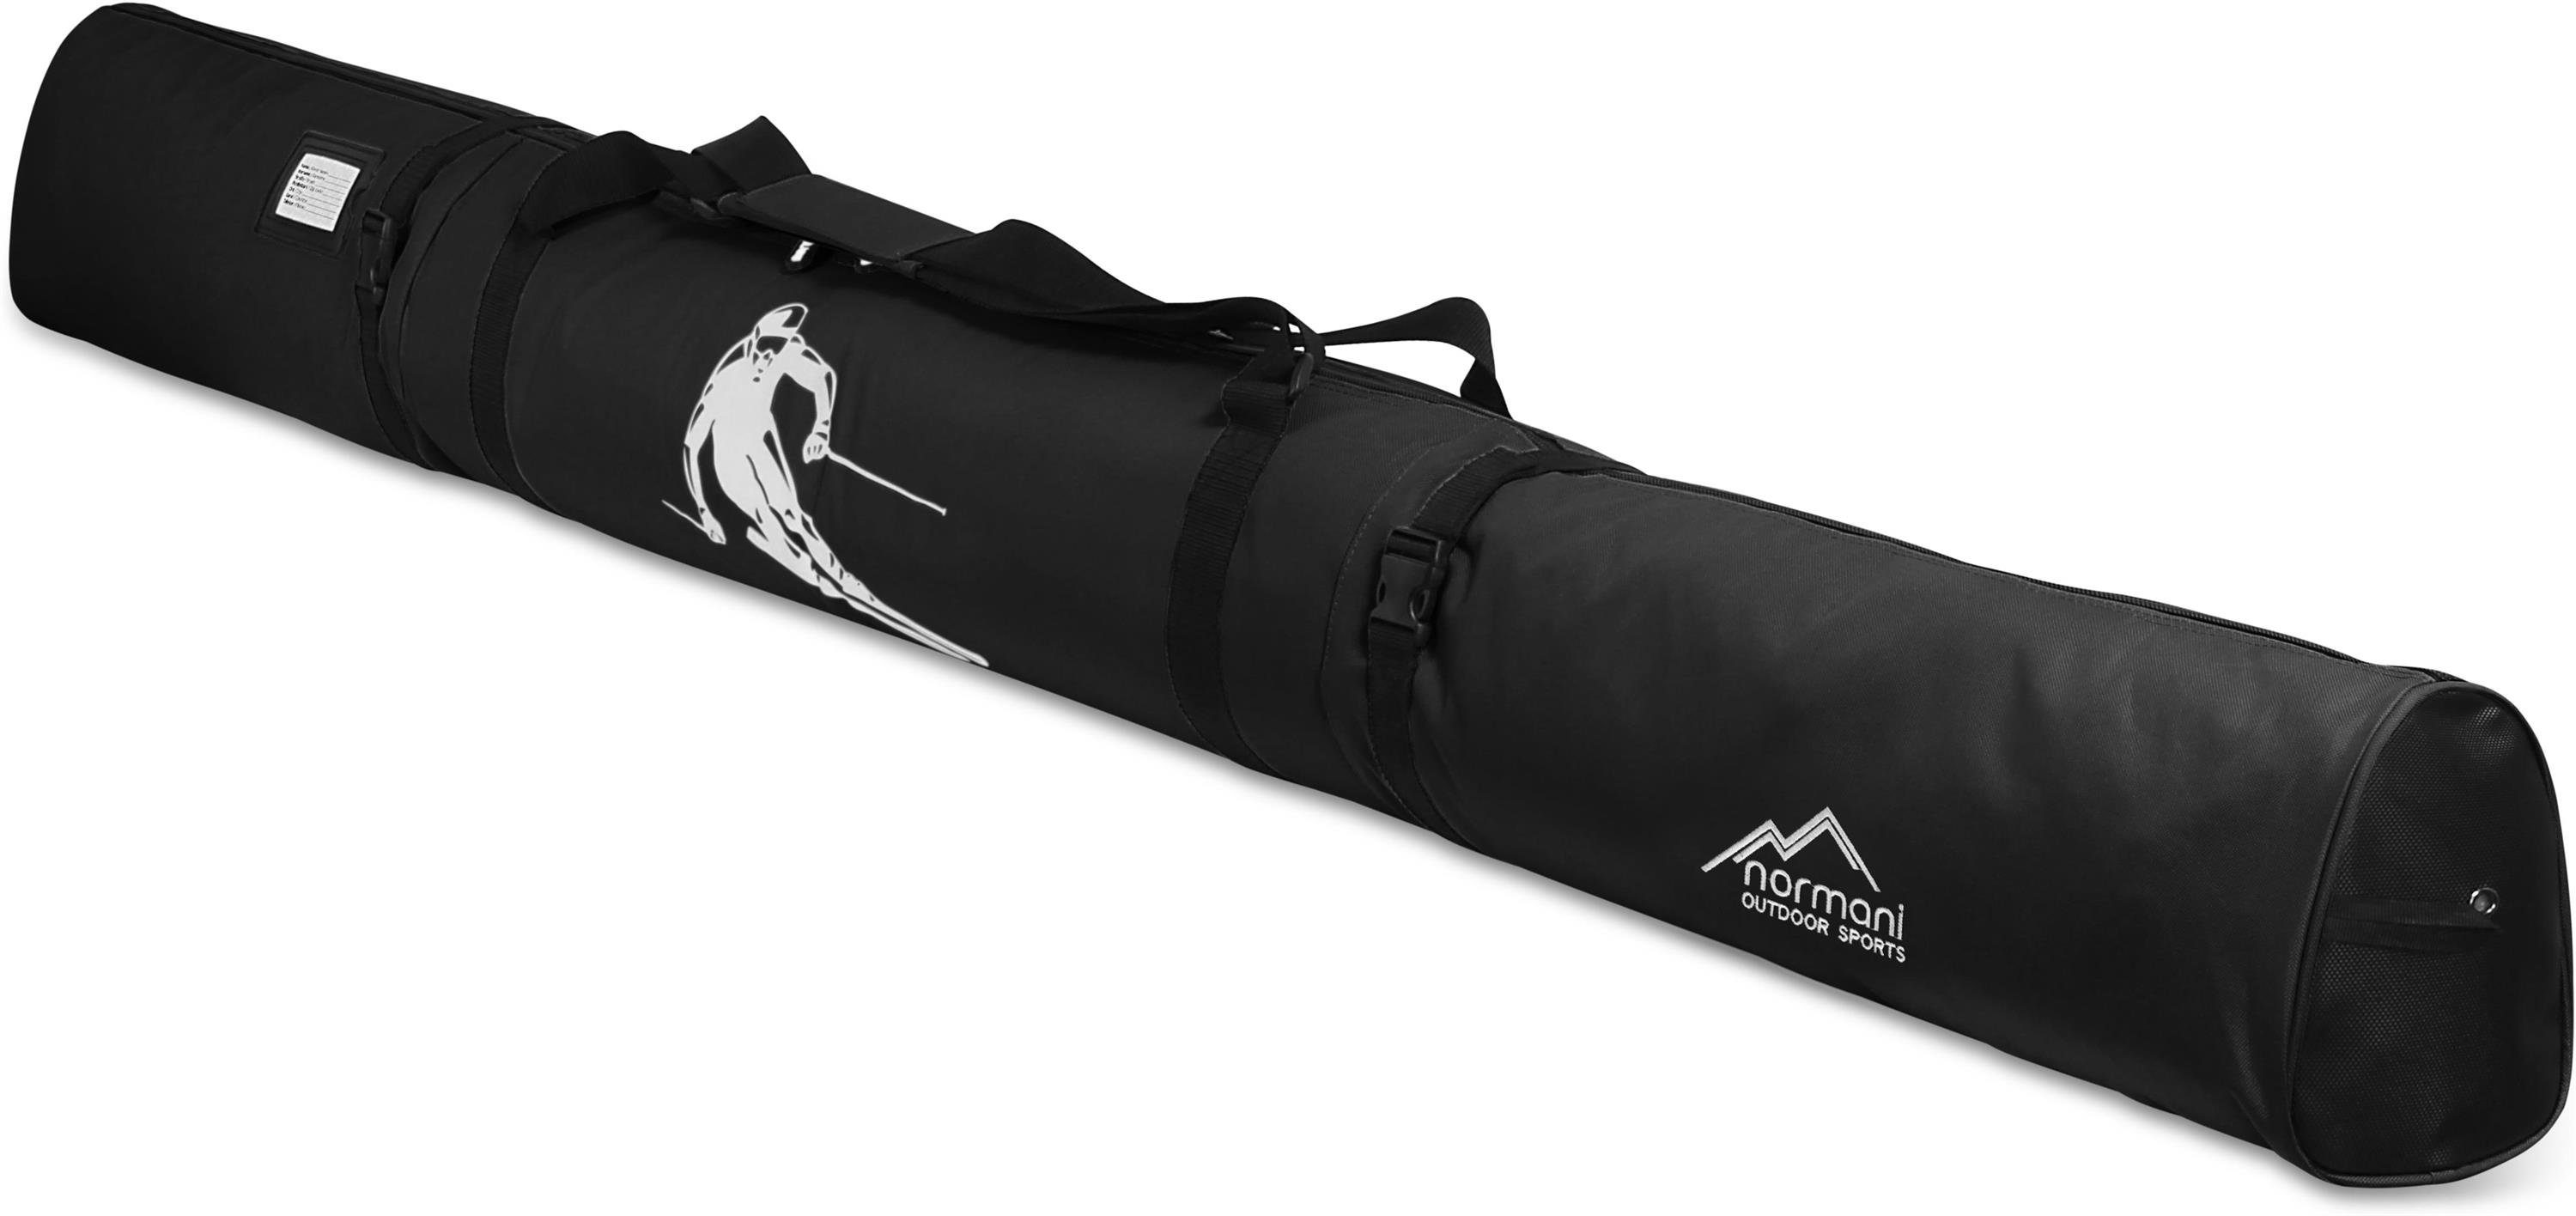 Sporttasche Alpine Aufbewahrungstasche Transporttasche und Skitasche für normani Run 170, Schwarz Skitasche Skier Skistöcke Skihülle